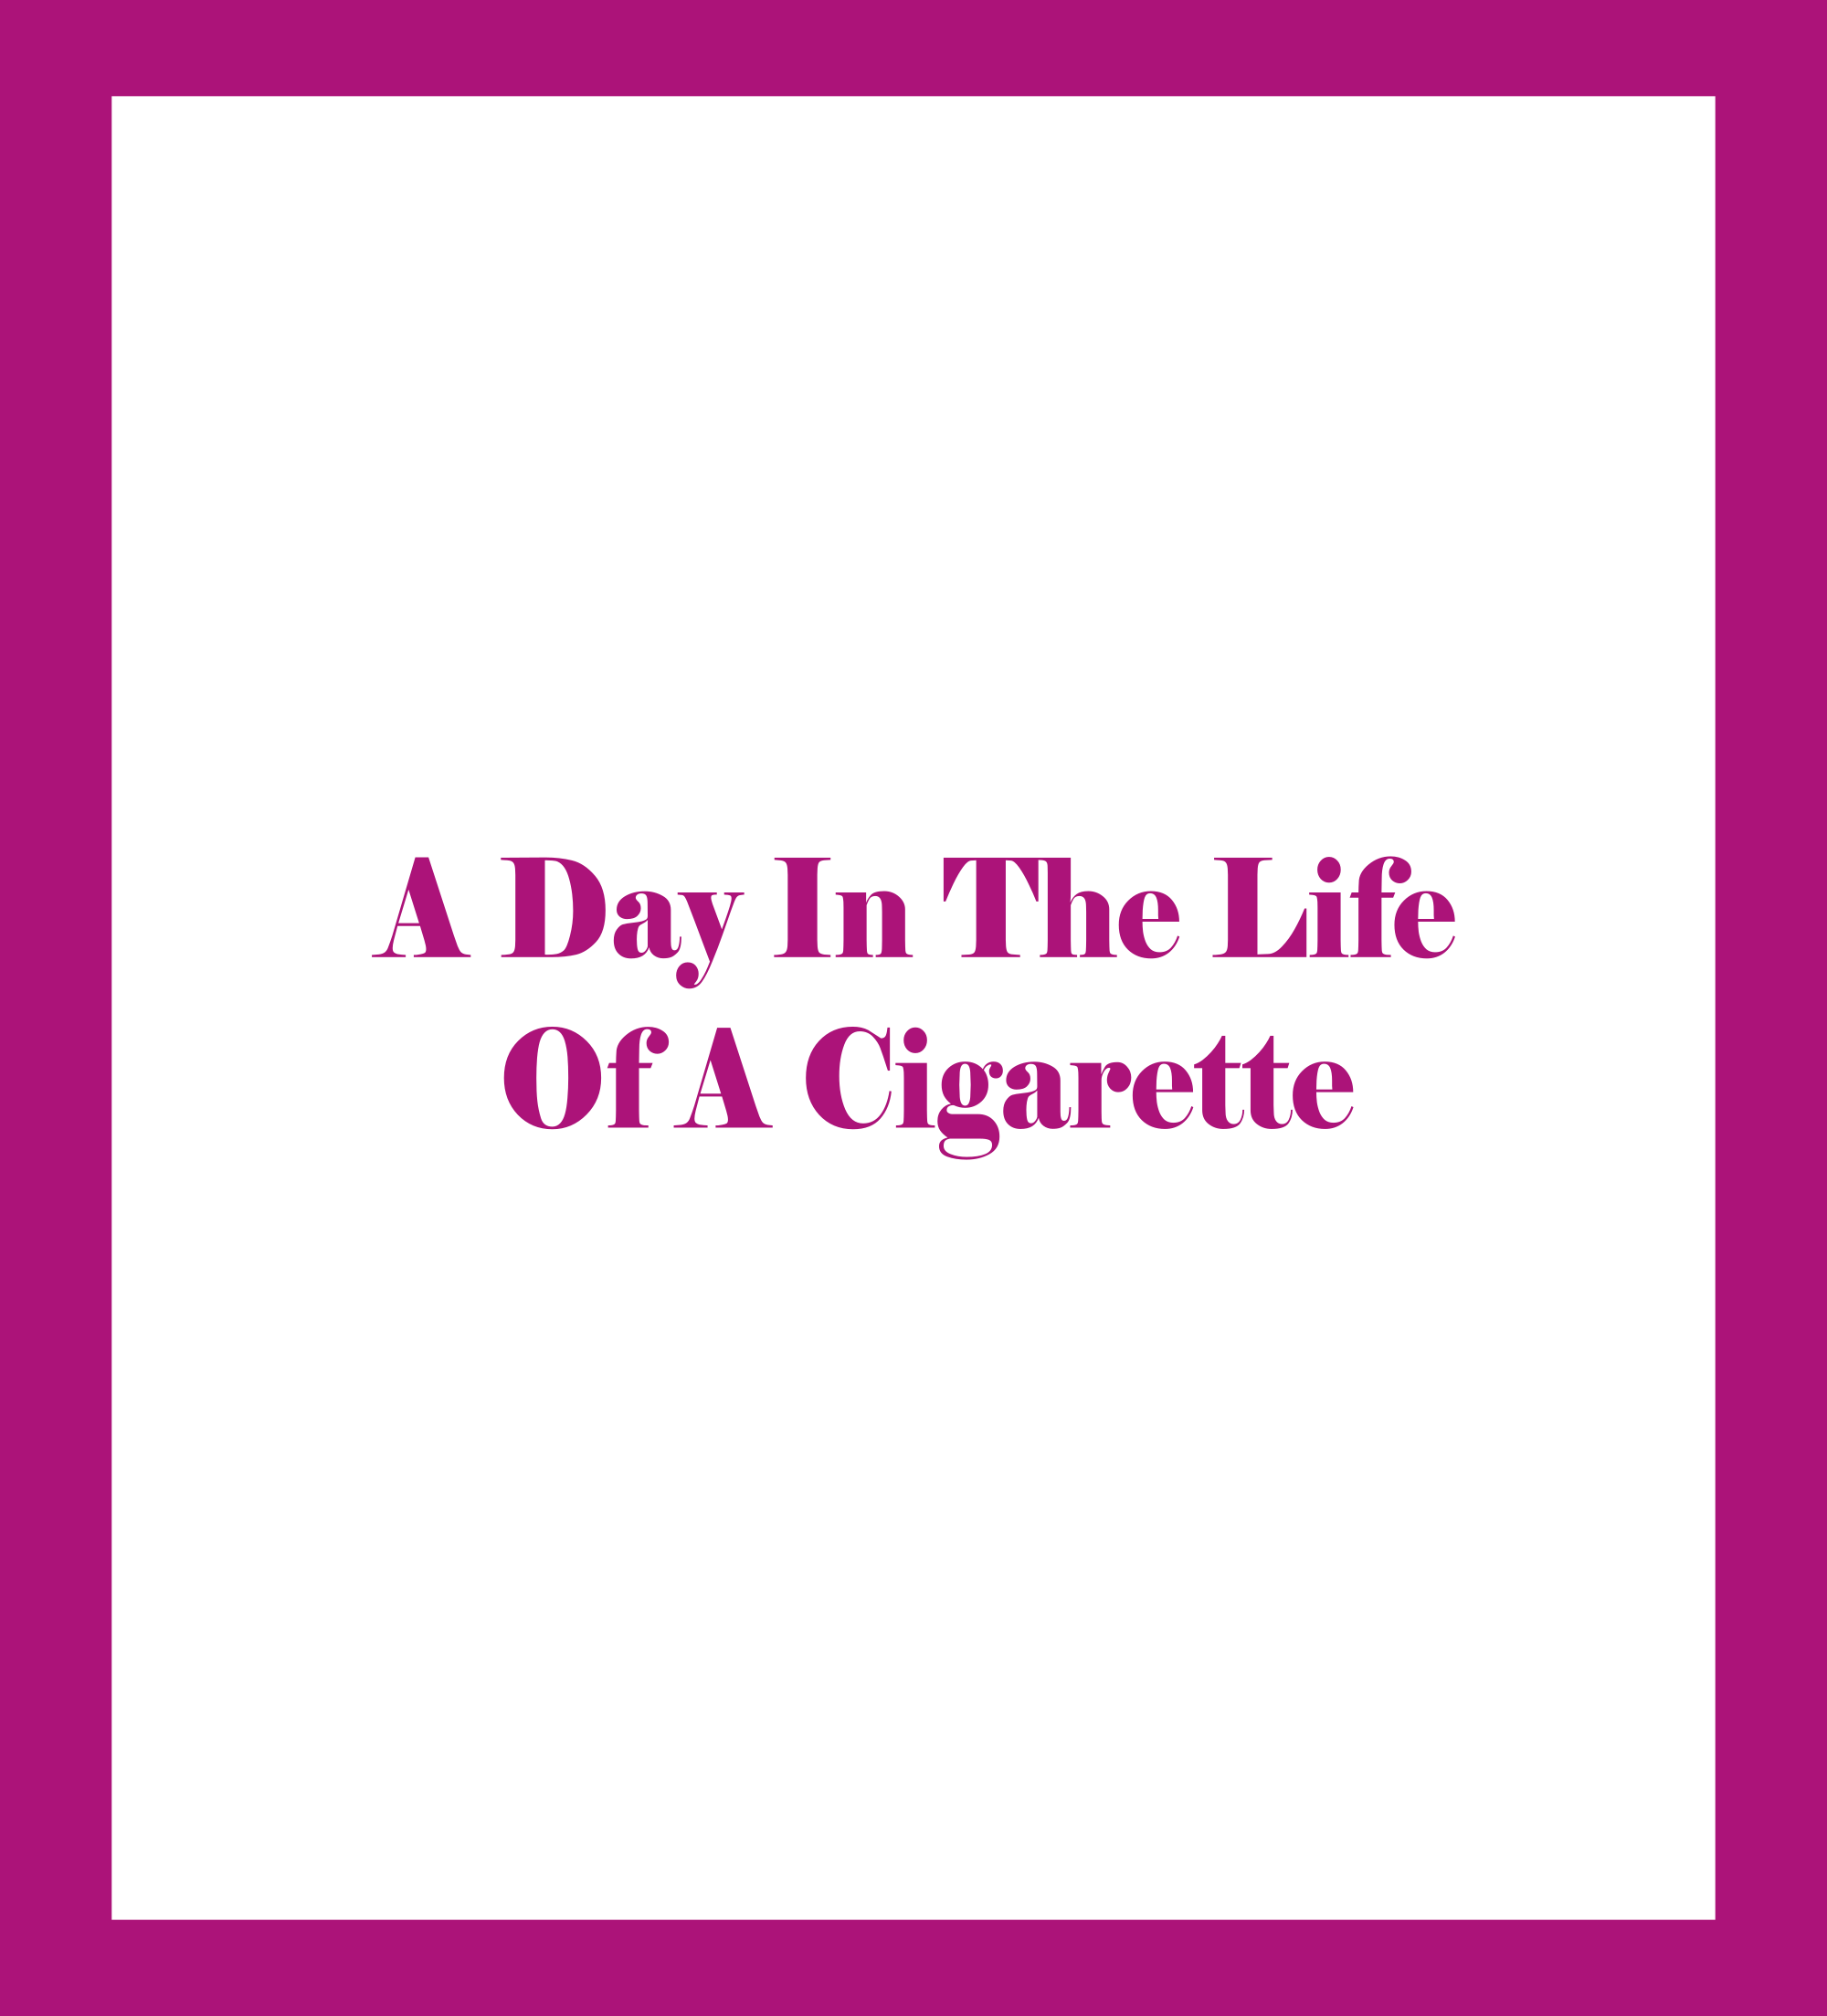 Caratula de A Day In The Life Of A Cigarette (Un día en la vida de un cigarrillo) 